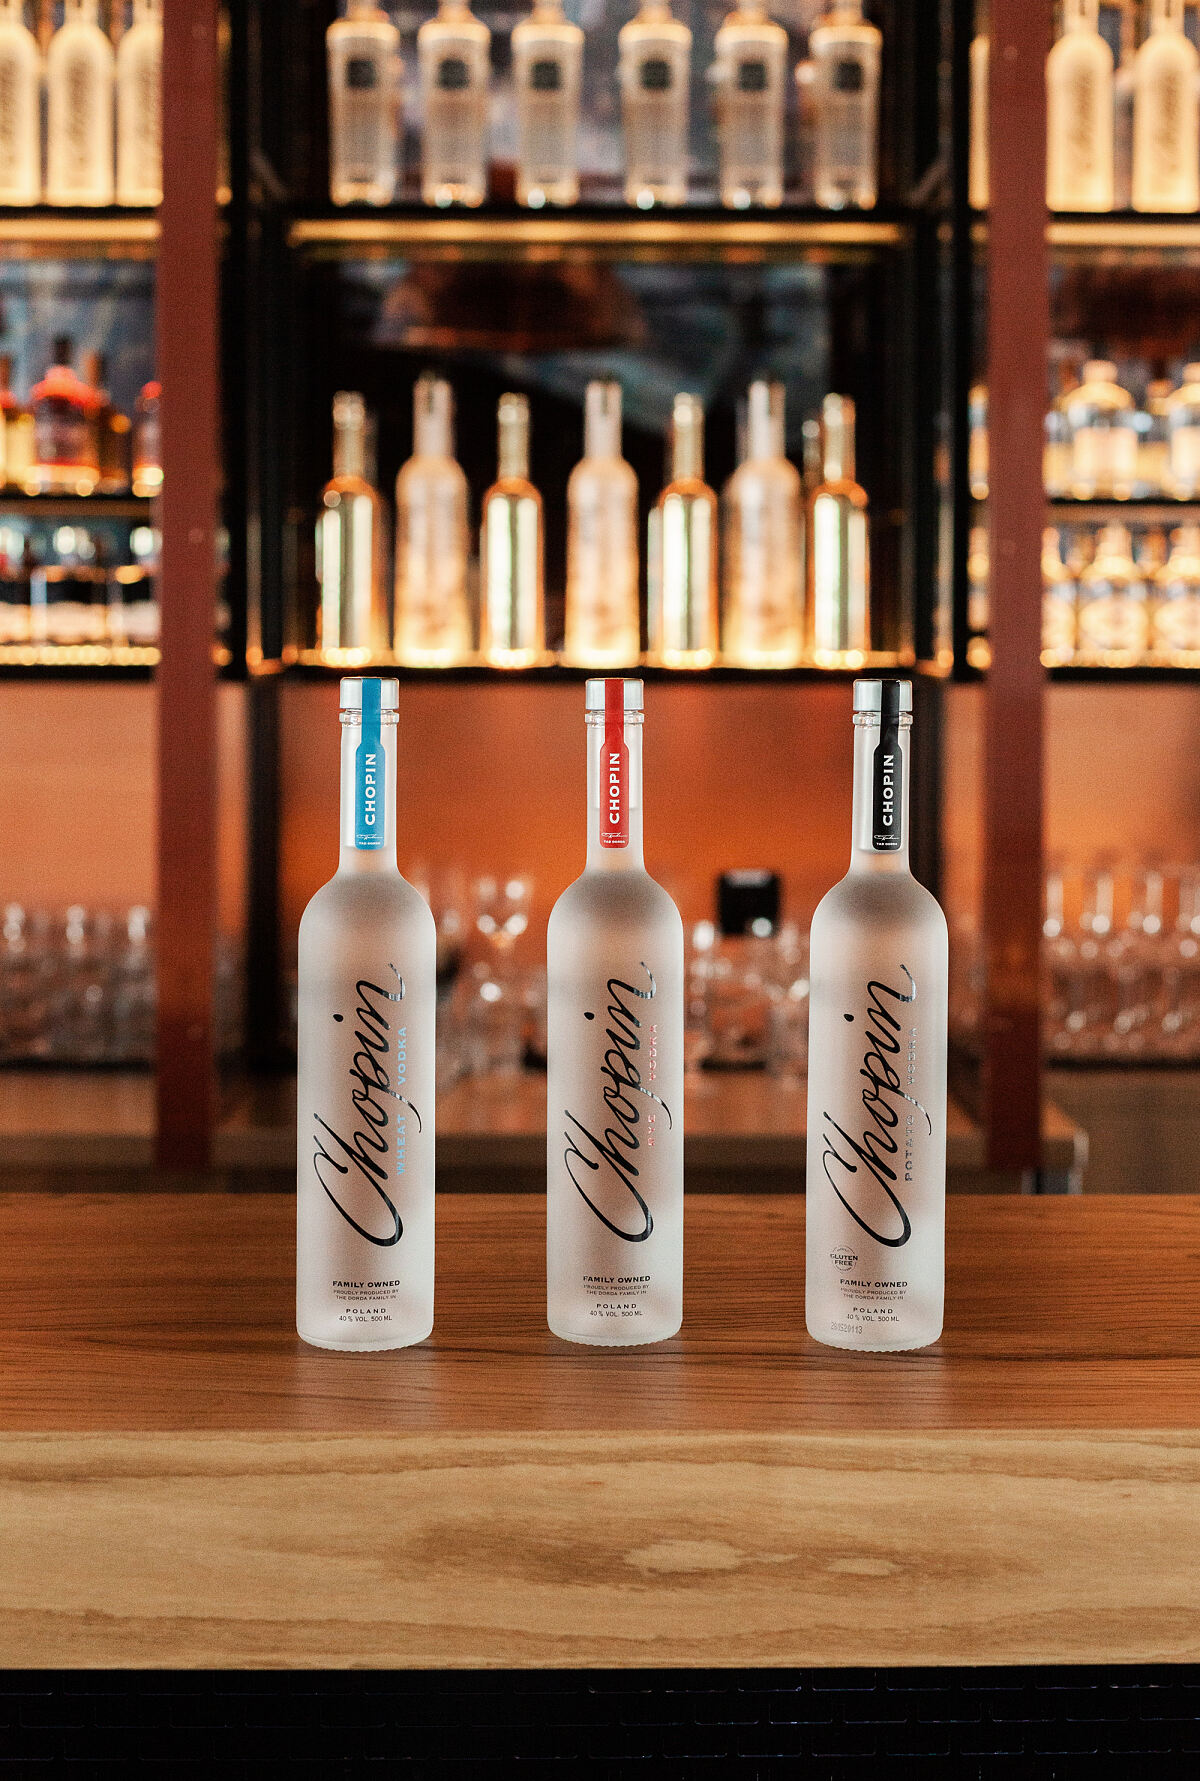 Chopin Vodka Moodbild Bar